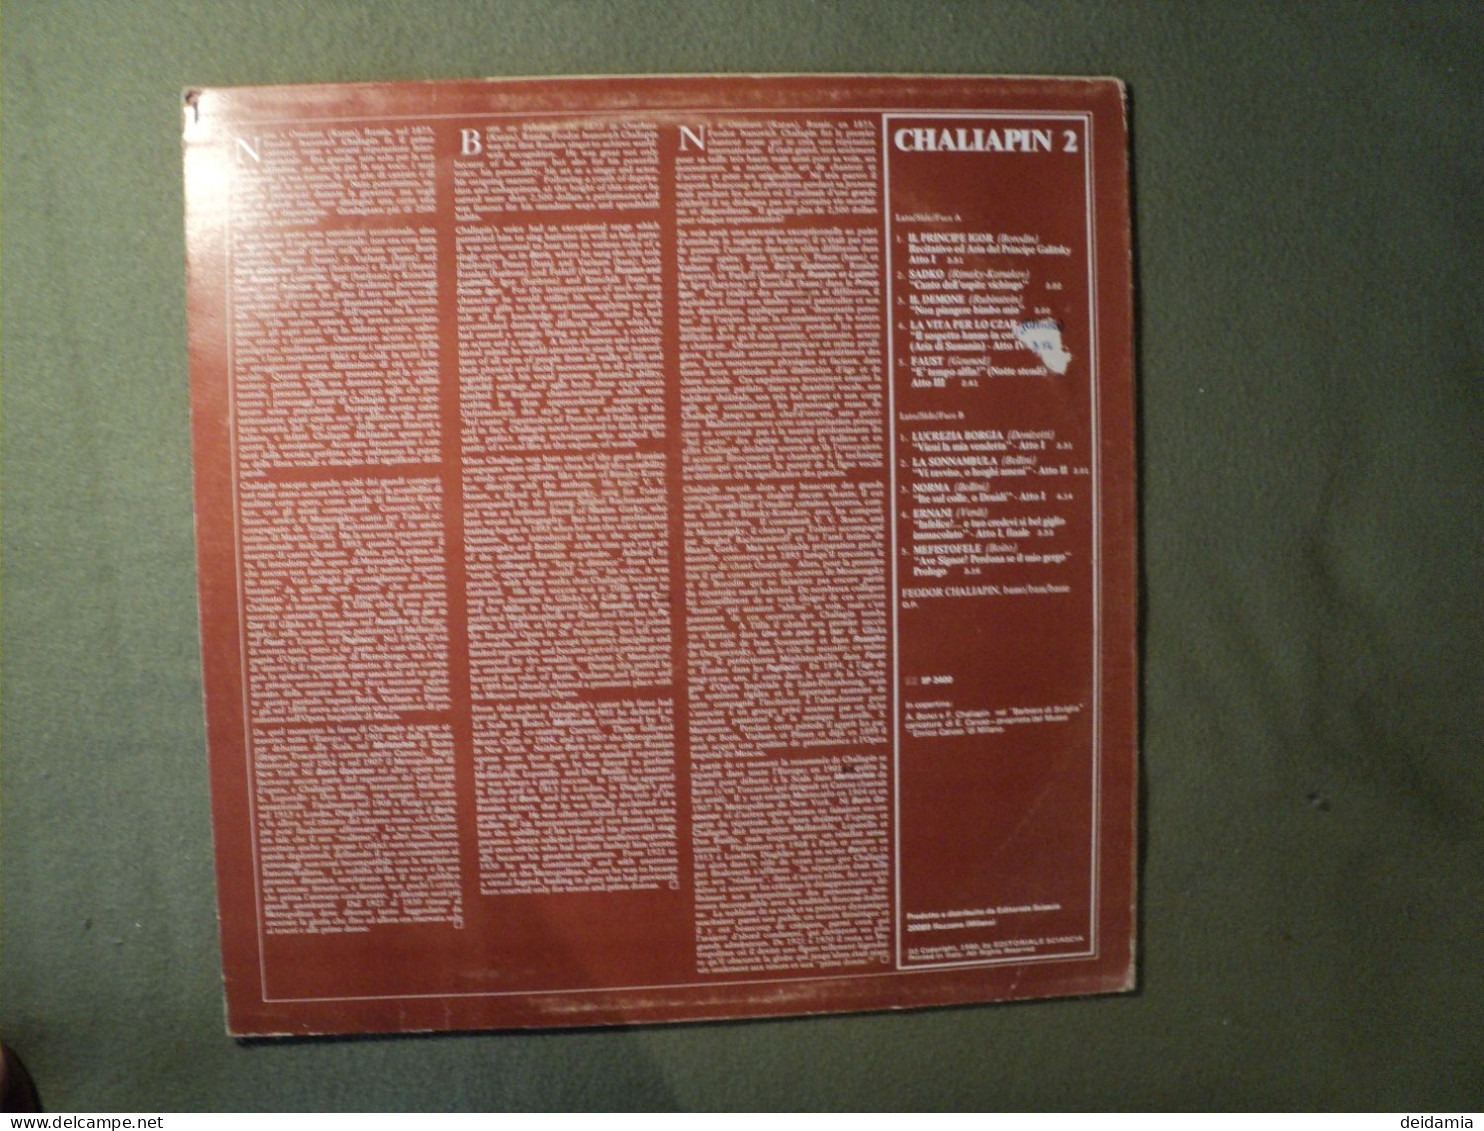 33 TOURS FEODOR CHALIAPIN. 1980. VOLUME 2. BELCANTO. VDS 9495 IL PRINCIPE IGOR / SADKO / IL DEMONE / LA VITA PER LO CZAR - Sonstige - Italienische Musik